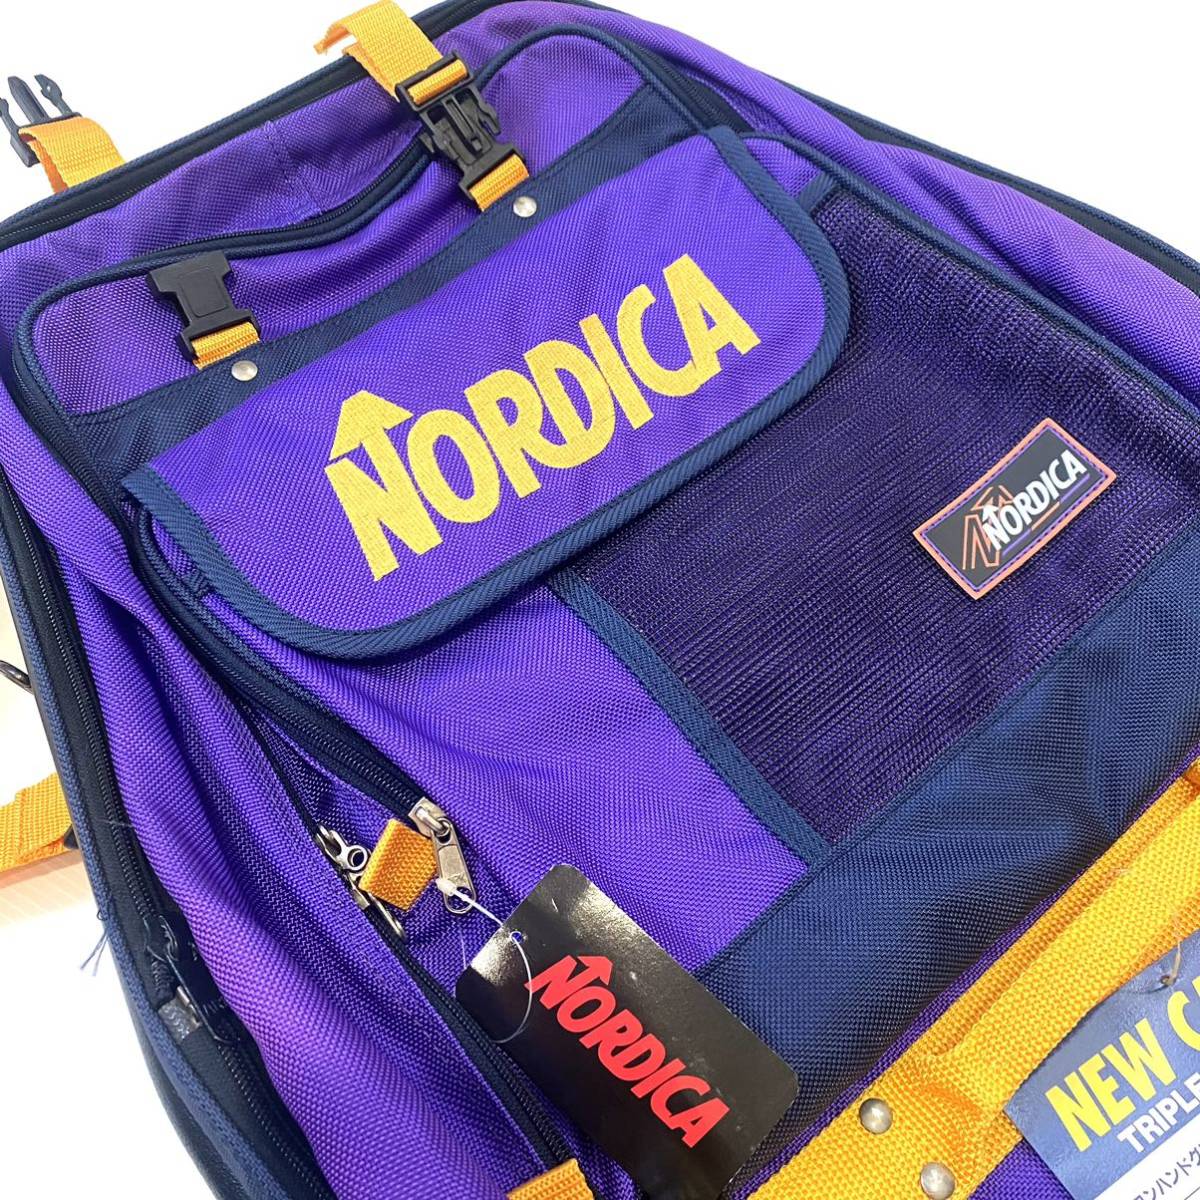 【新品】ノルディカ キャスター付バッグ 2way バックパック スキー スノボ ブーツ収納バッグ_画像4